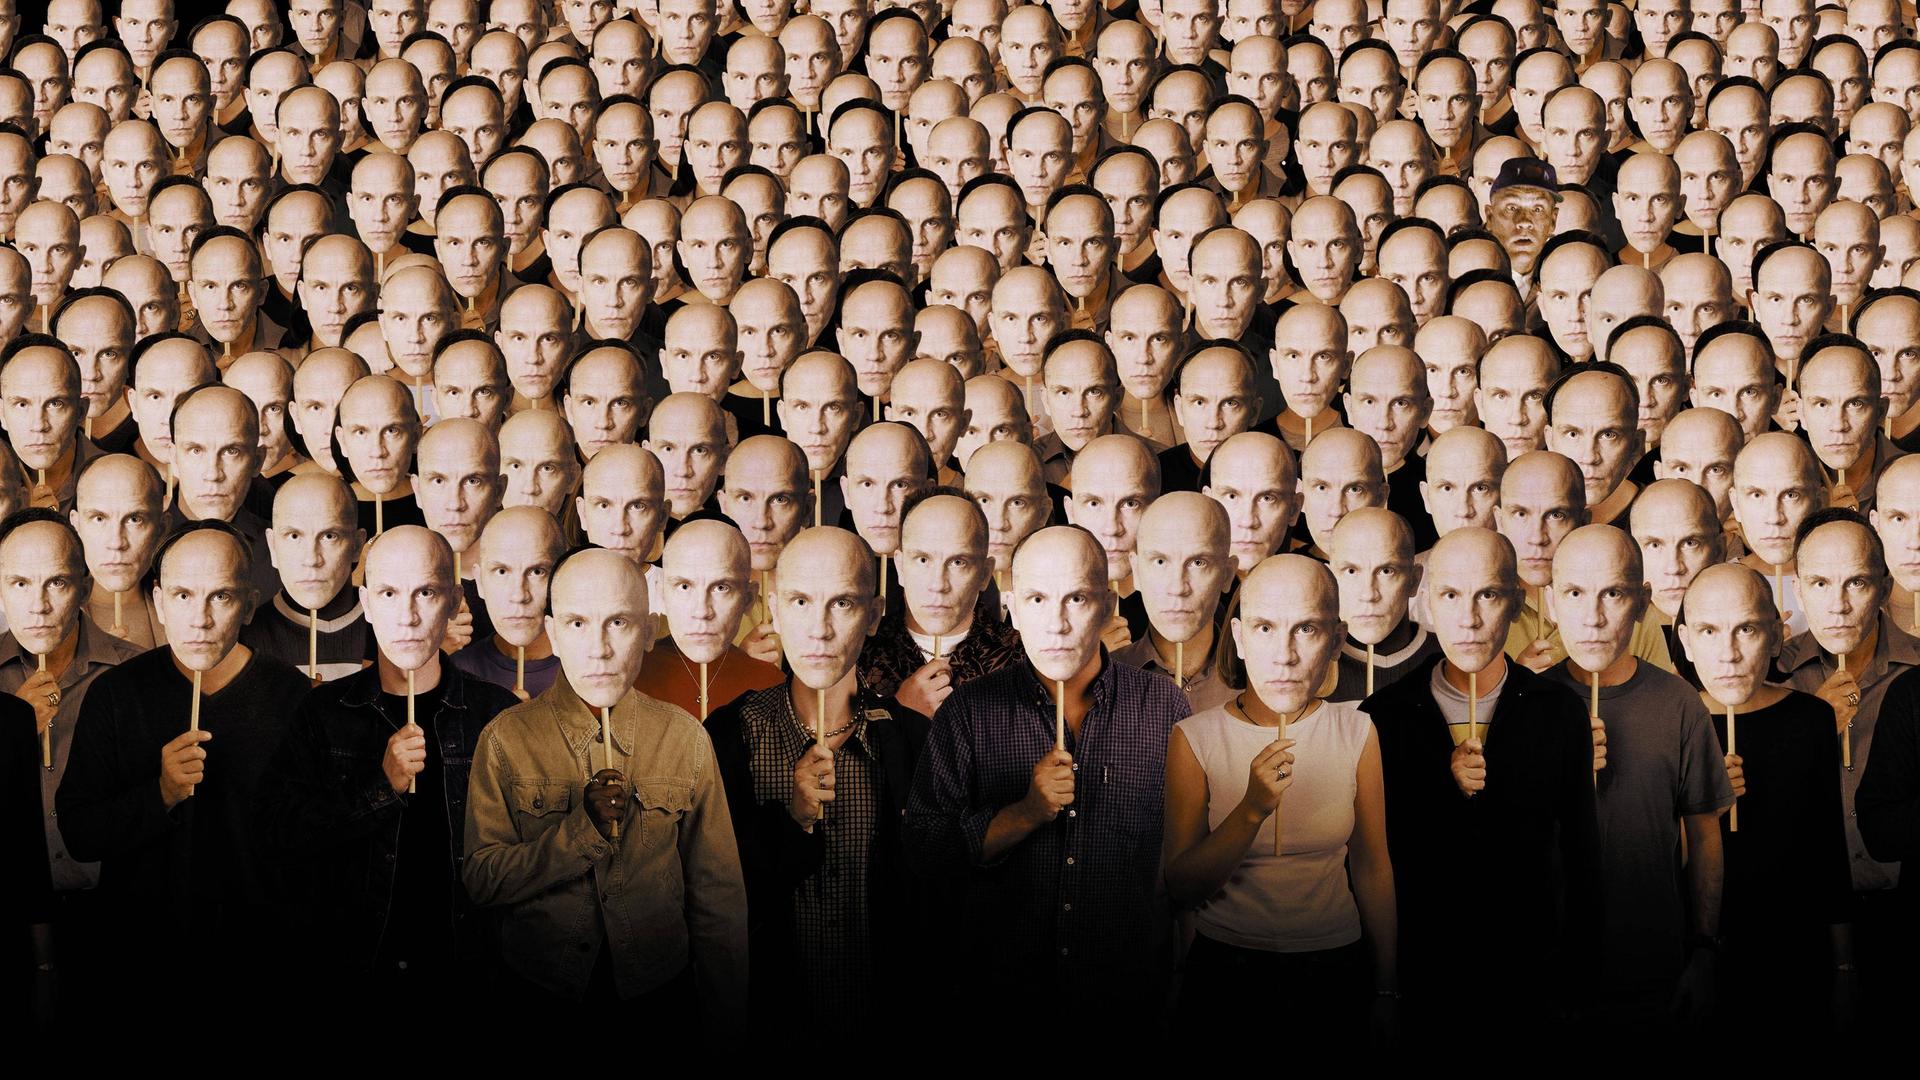 Im Filmbild aus "Being John Malkovich" stehen viele Menschen nebeneinander und halten sich Pappmasken vor die eigenen Gesichter, die alle das Gesicht von John Malkovich zeigen.